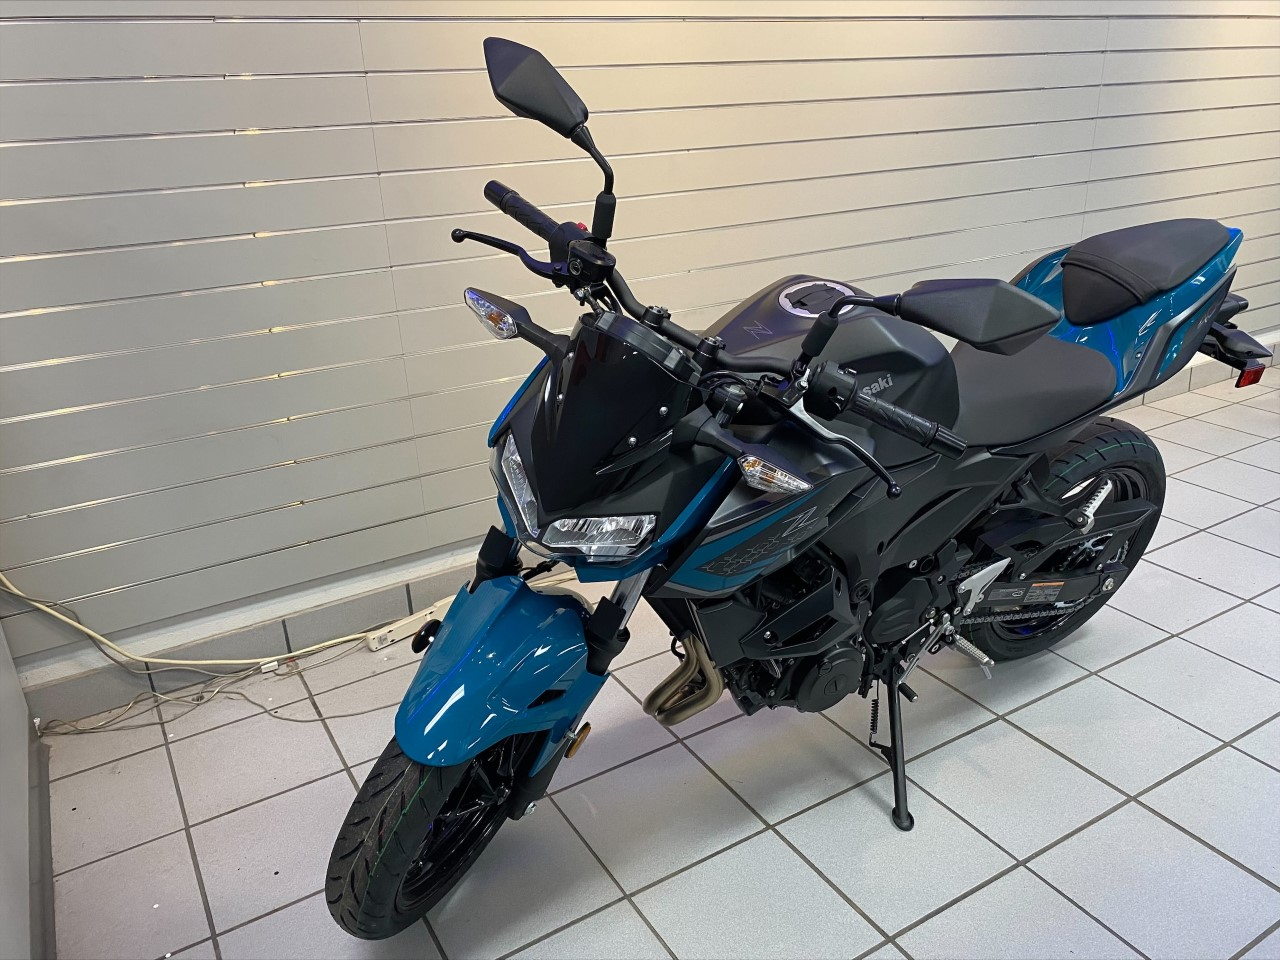 New 2021 Kawasaki Z400 ABS | Motorcycles in Kaukauna WI | Pearl Nightshade Teal / Metallic Flat Spark Black